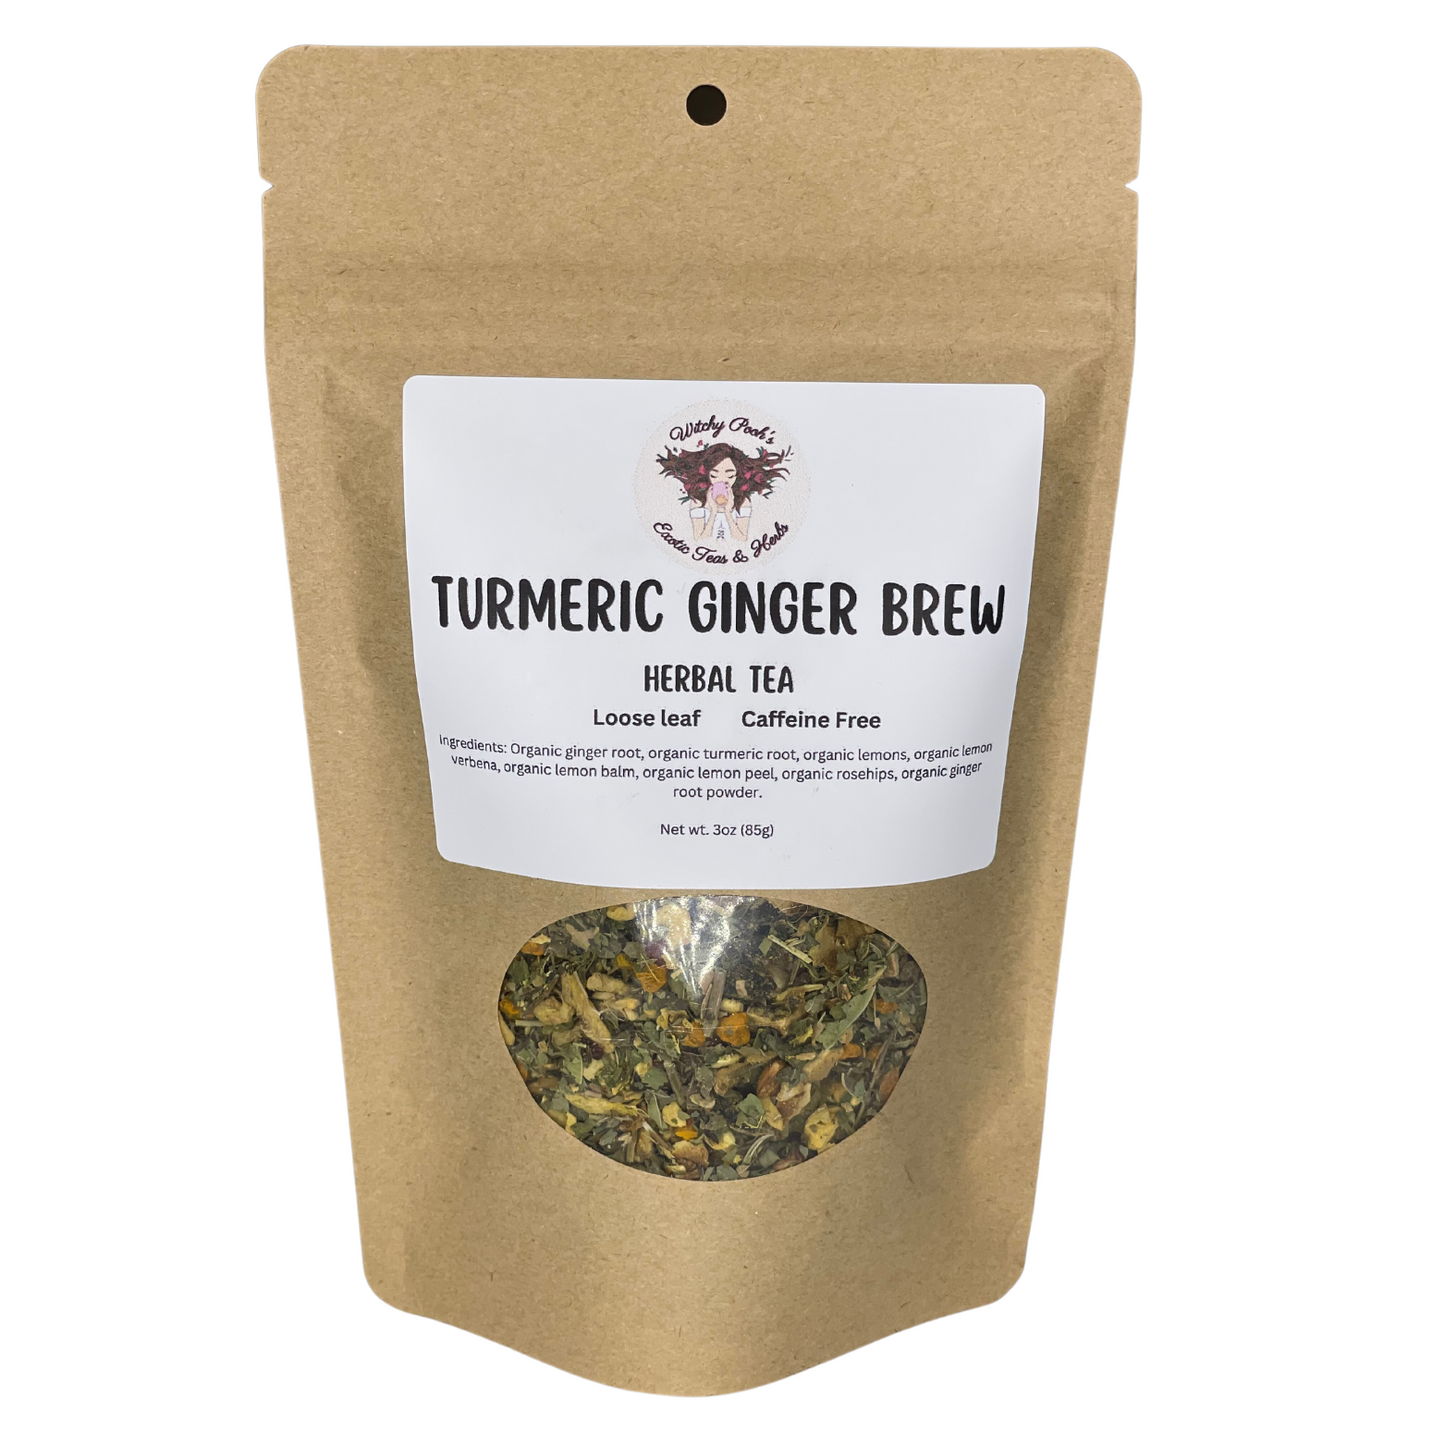 Turmeric Ginger Brew Tea, Herbal Tea, Loose Leaf Tea, Organic Tea, Caffeine Free Tea, Functional Tea